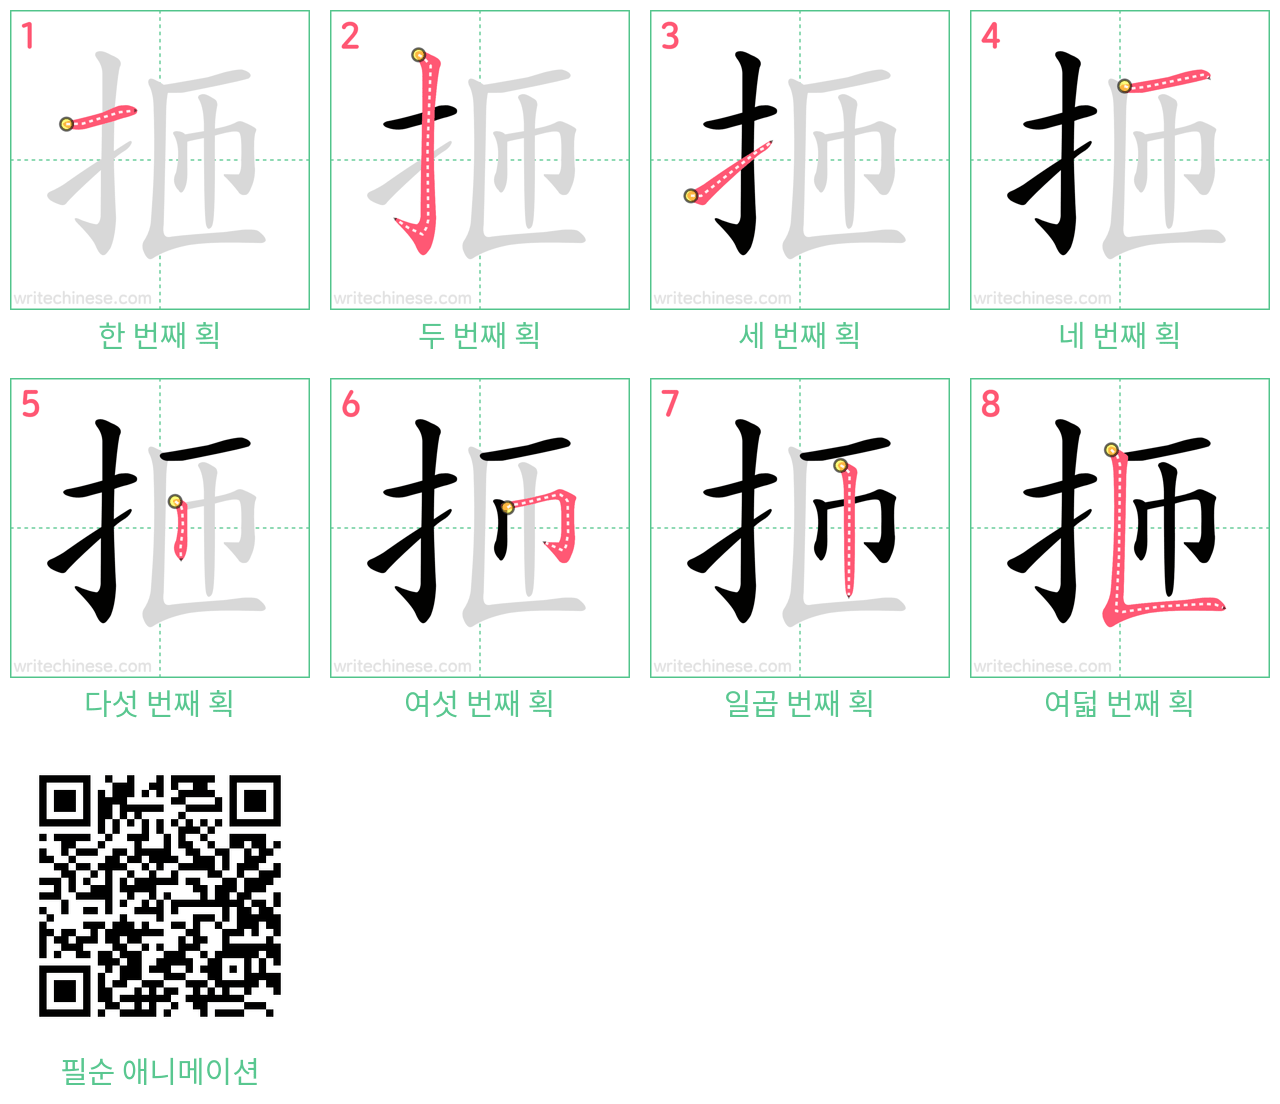 㧜 step-by-step stroke order diagrams